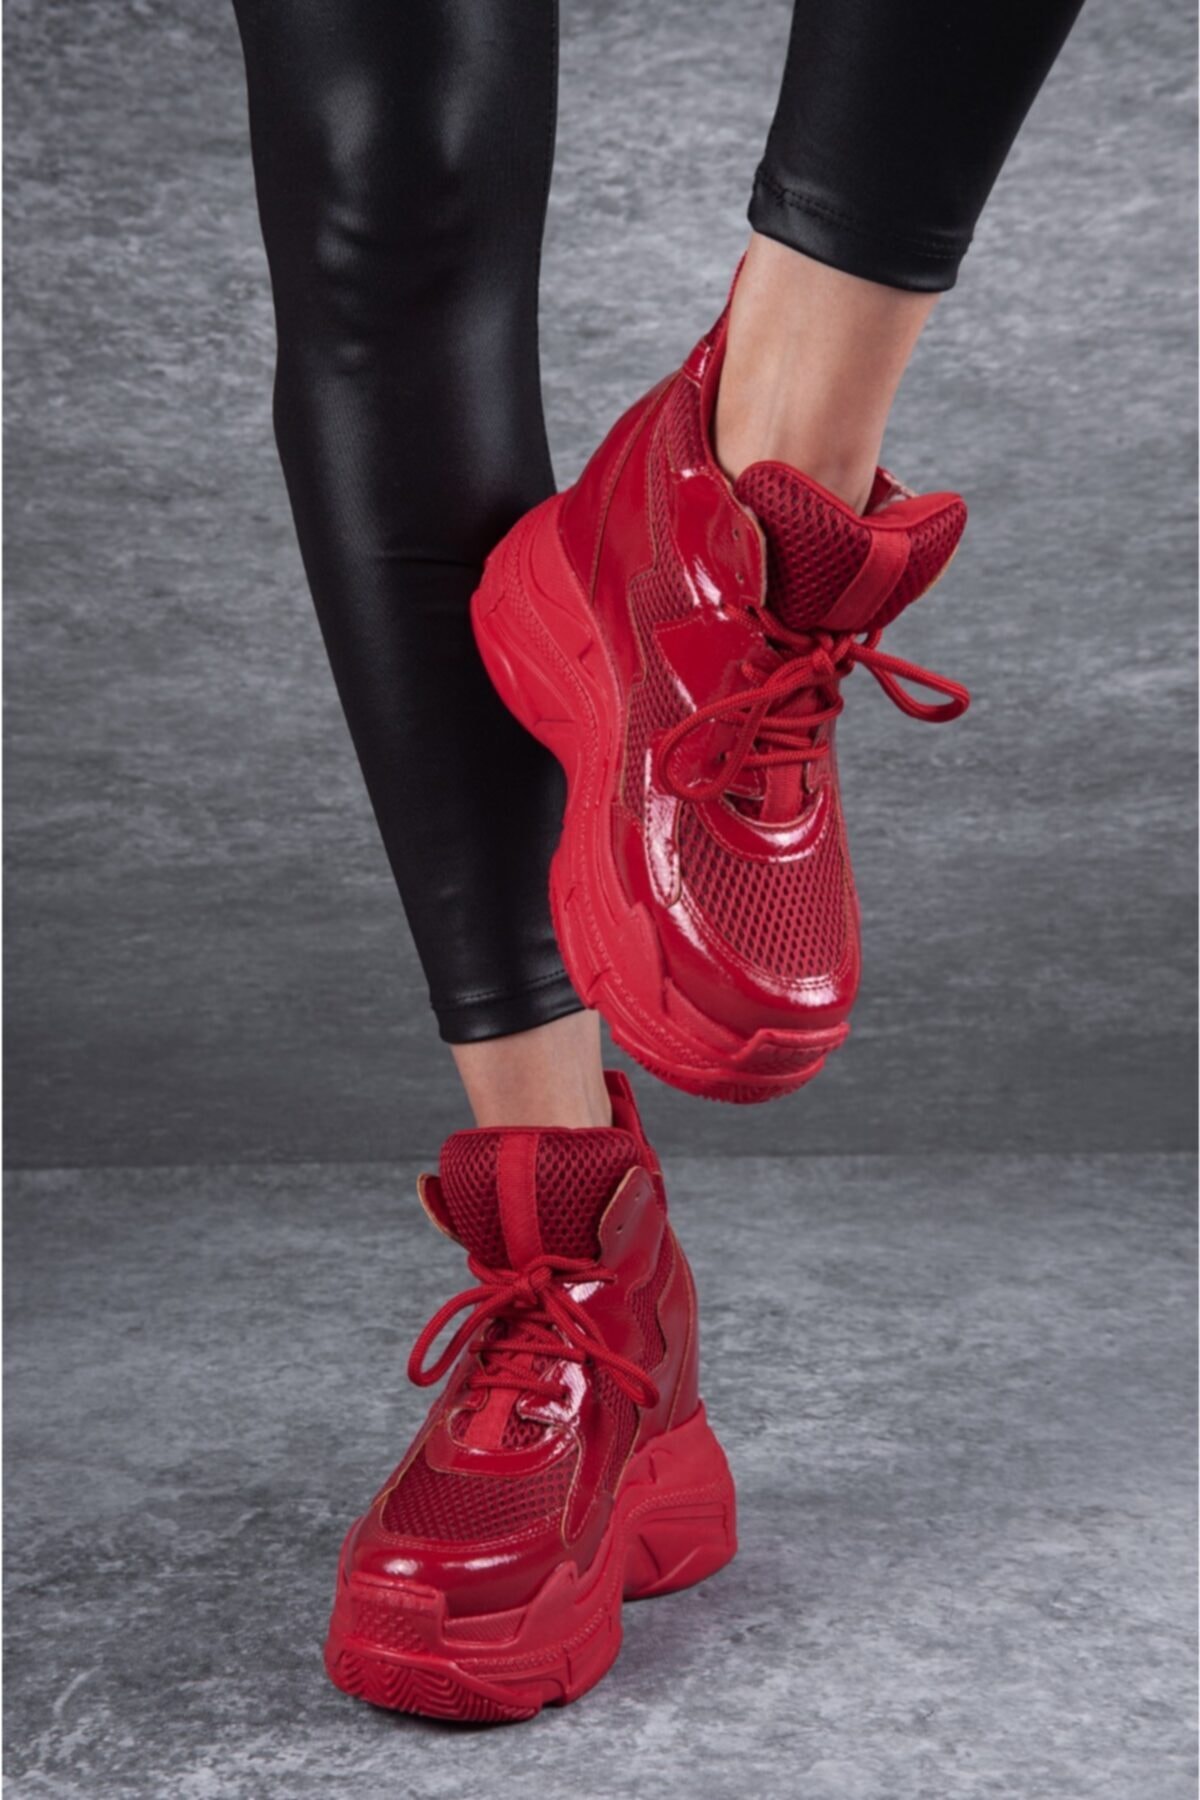 Tarz Topuklar Kadın Bağcıklı Gizli Dolgu Topuklu Parlak Kırmızı Spor Ayakkabı SN10893